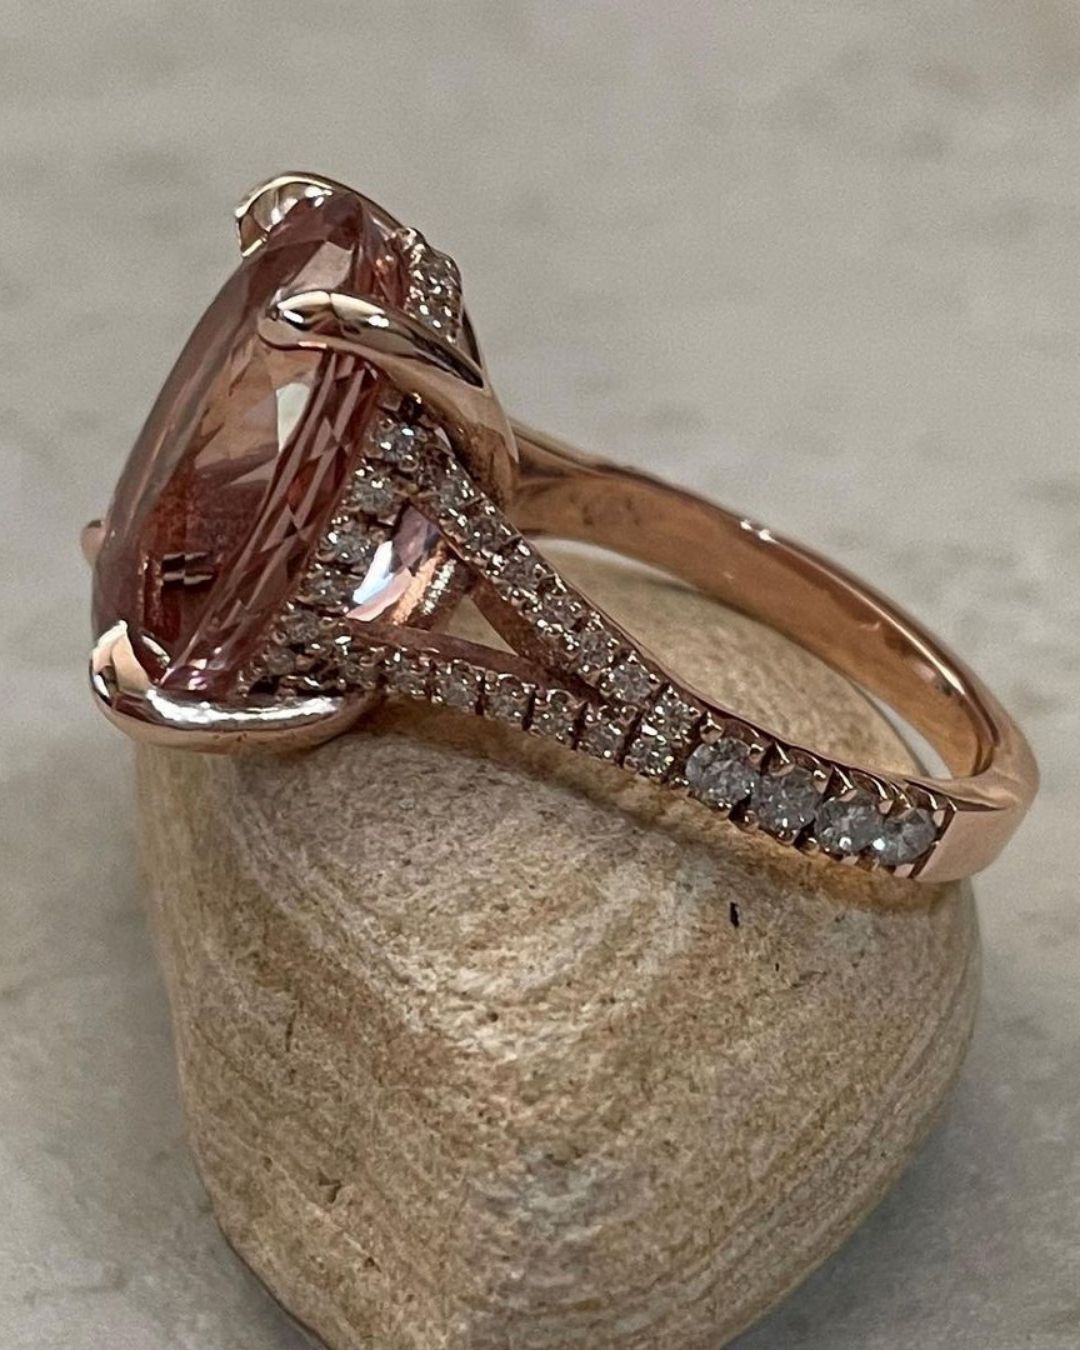 morganite engagement rings rose gold engagement rings1